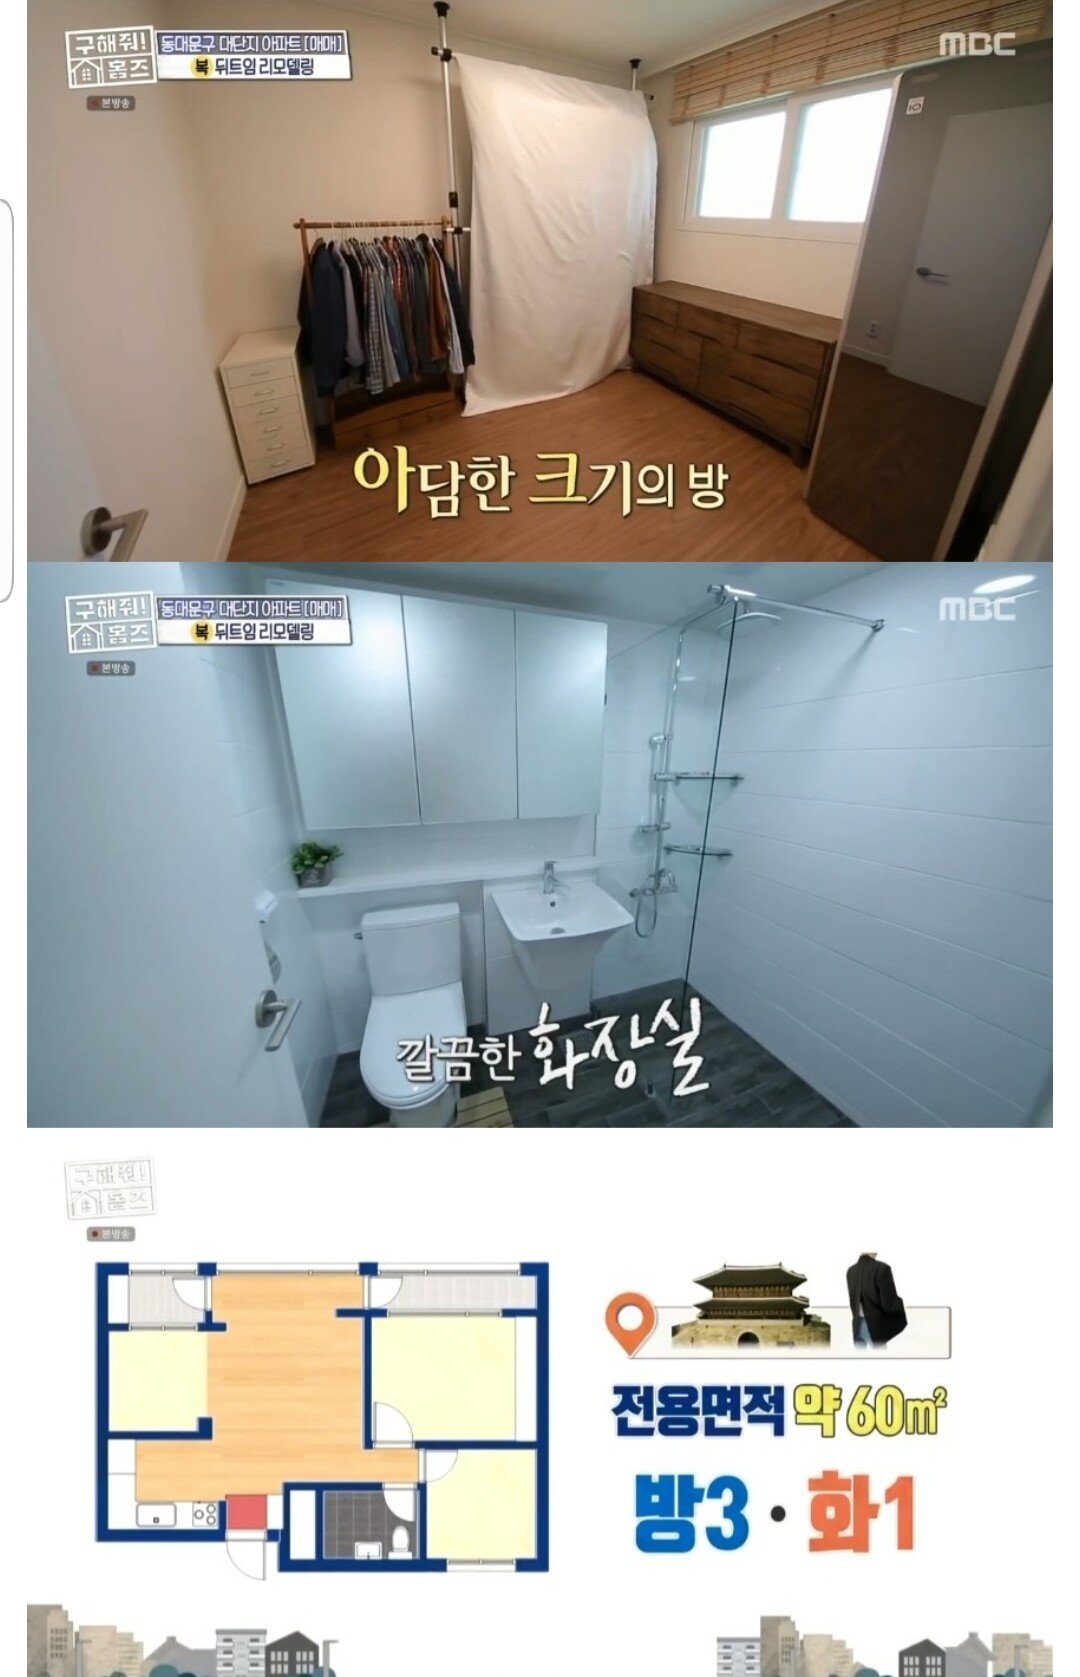 20211008_175423.jpg 구해줘 홈즈가 찾은 3자매가 8억으로 구매할 수 있는 서울 아파트.JPG